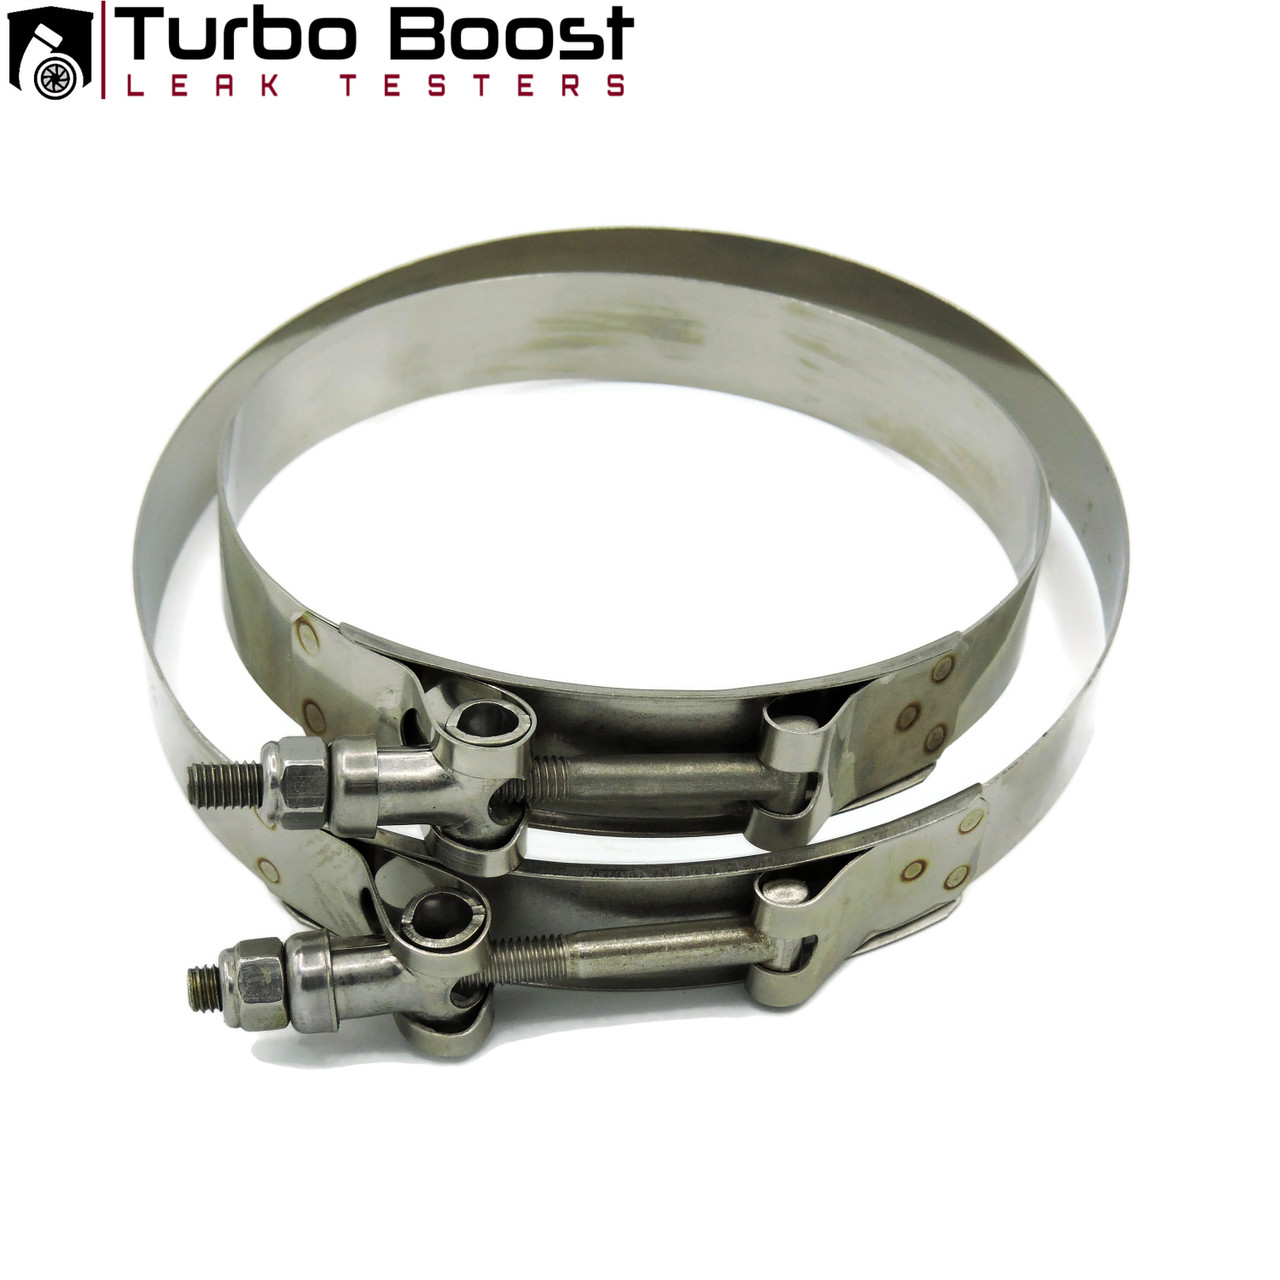 Shop Kit - Large Frame Turbos 3", 3.25", 3.5", 4" - BILLET 6061 Aluminum - Universal Shop Boost Leak Tester Kit